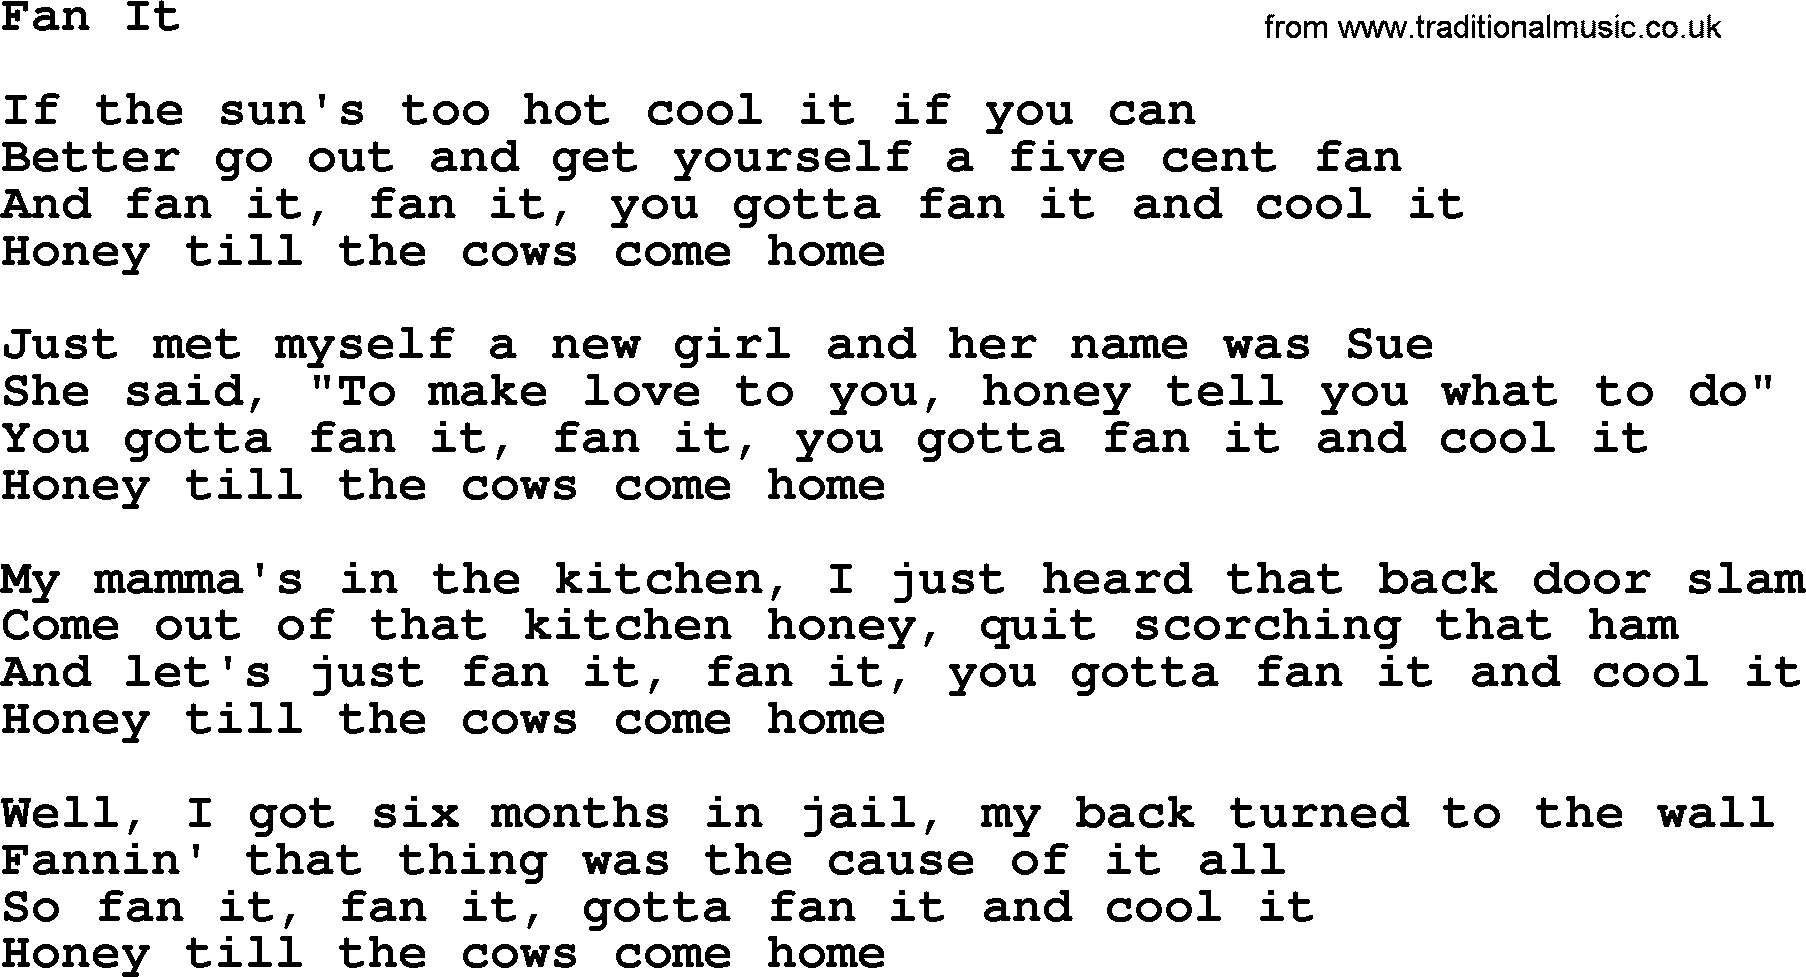 Willie Nelson song: Fan It lyrics